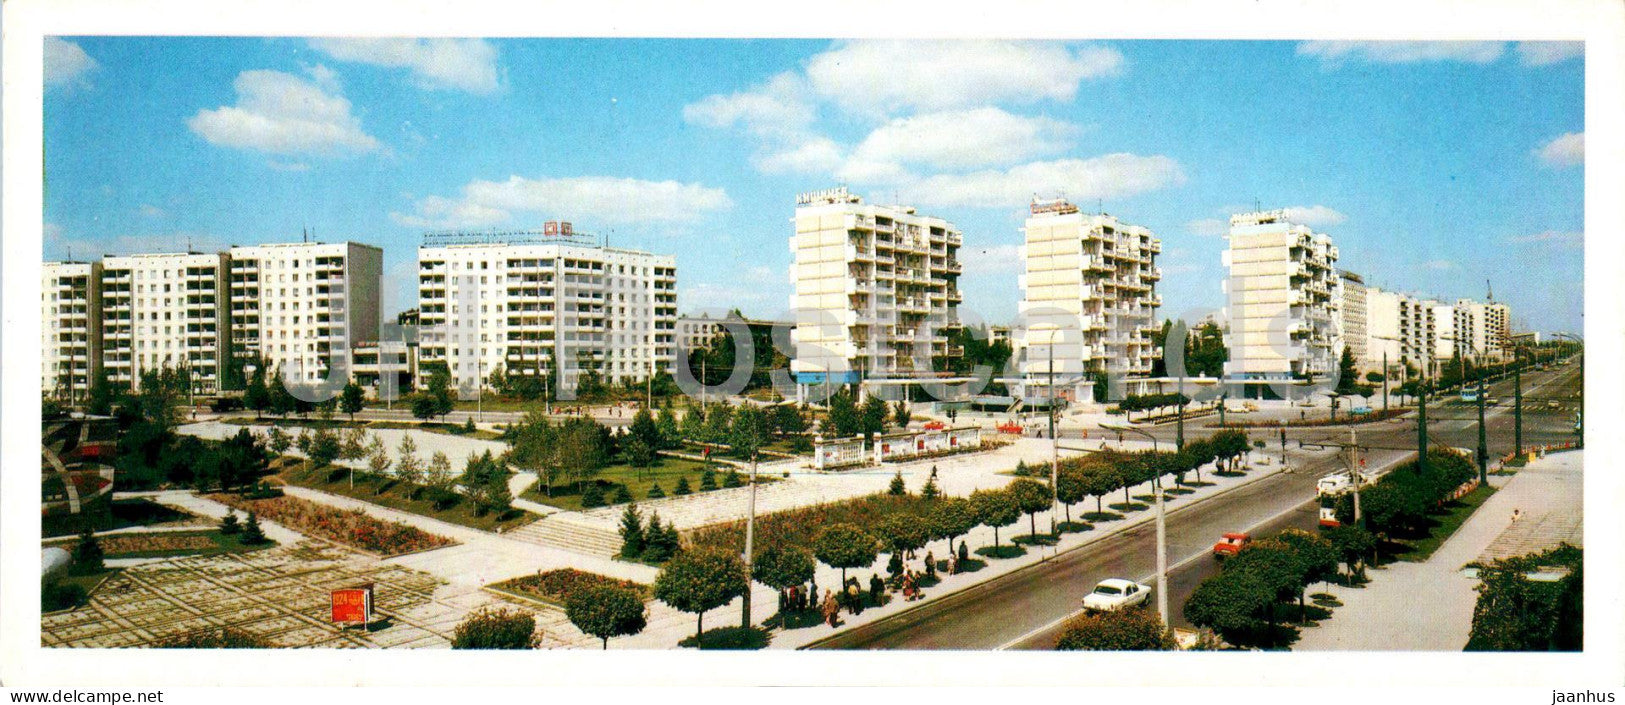 Chisinau - new district of Chisinau Ryshanovka - 1985 - Moldova USSR - unused